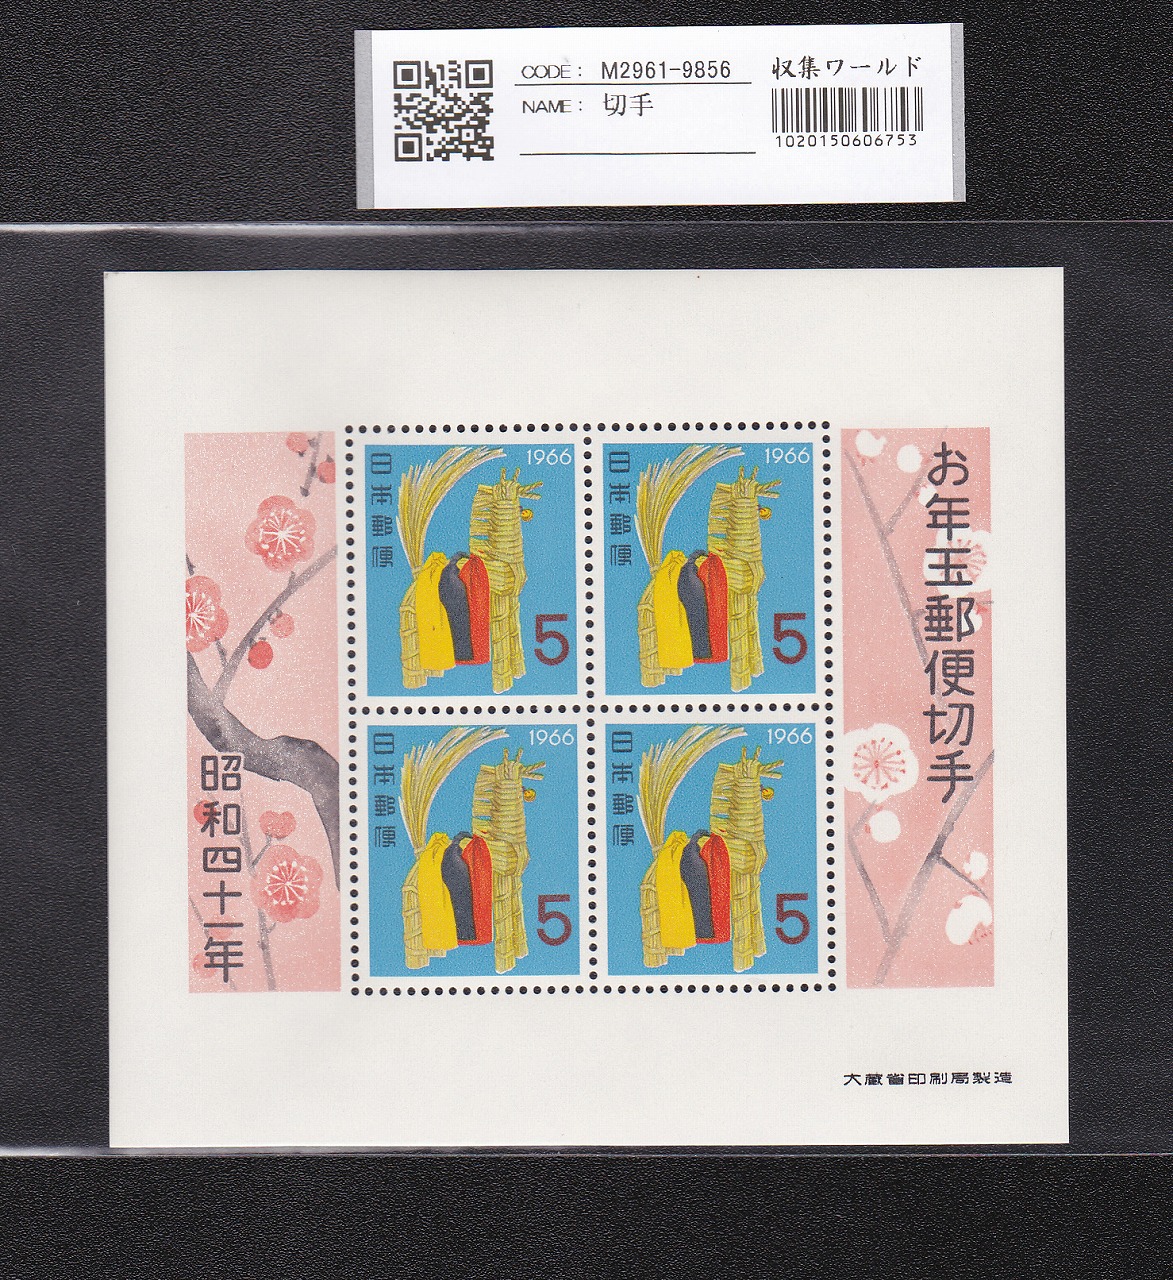 お年玉 郵便切手 昭和41年(1966)大蔵省発行 5円×4枚小型シート 未使用